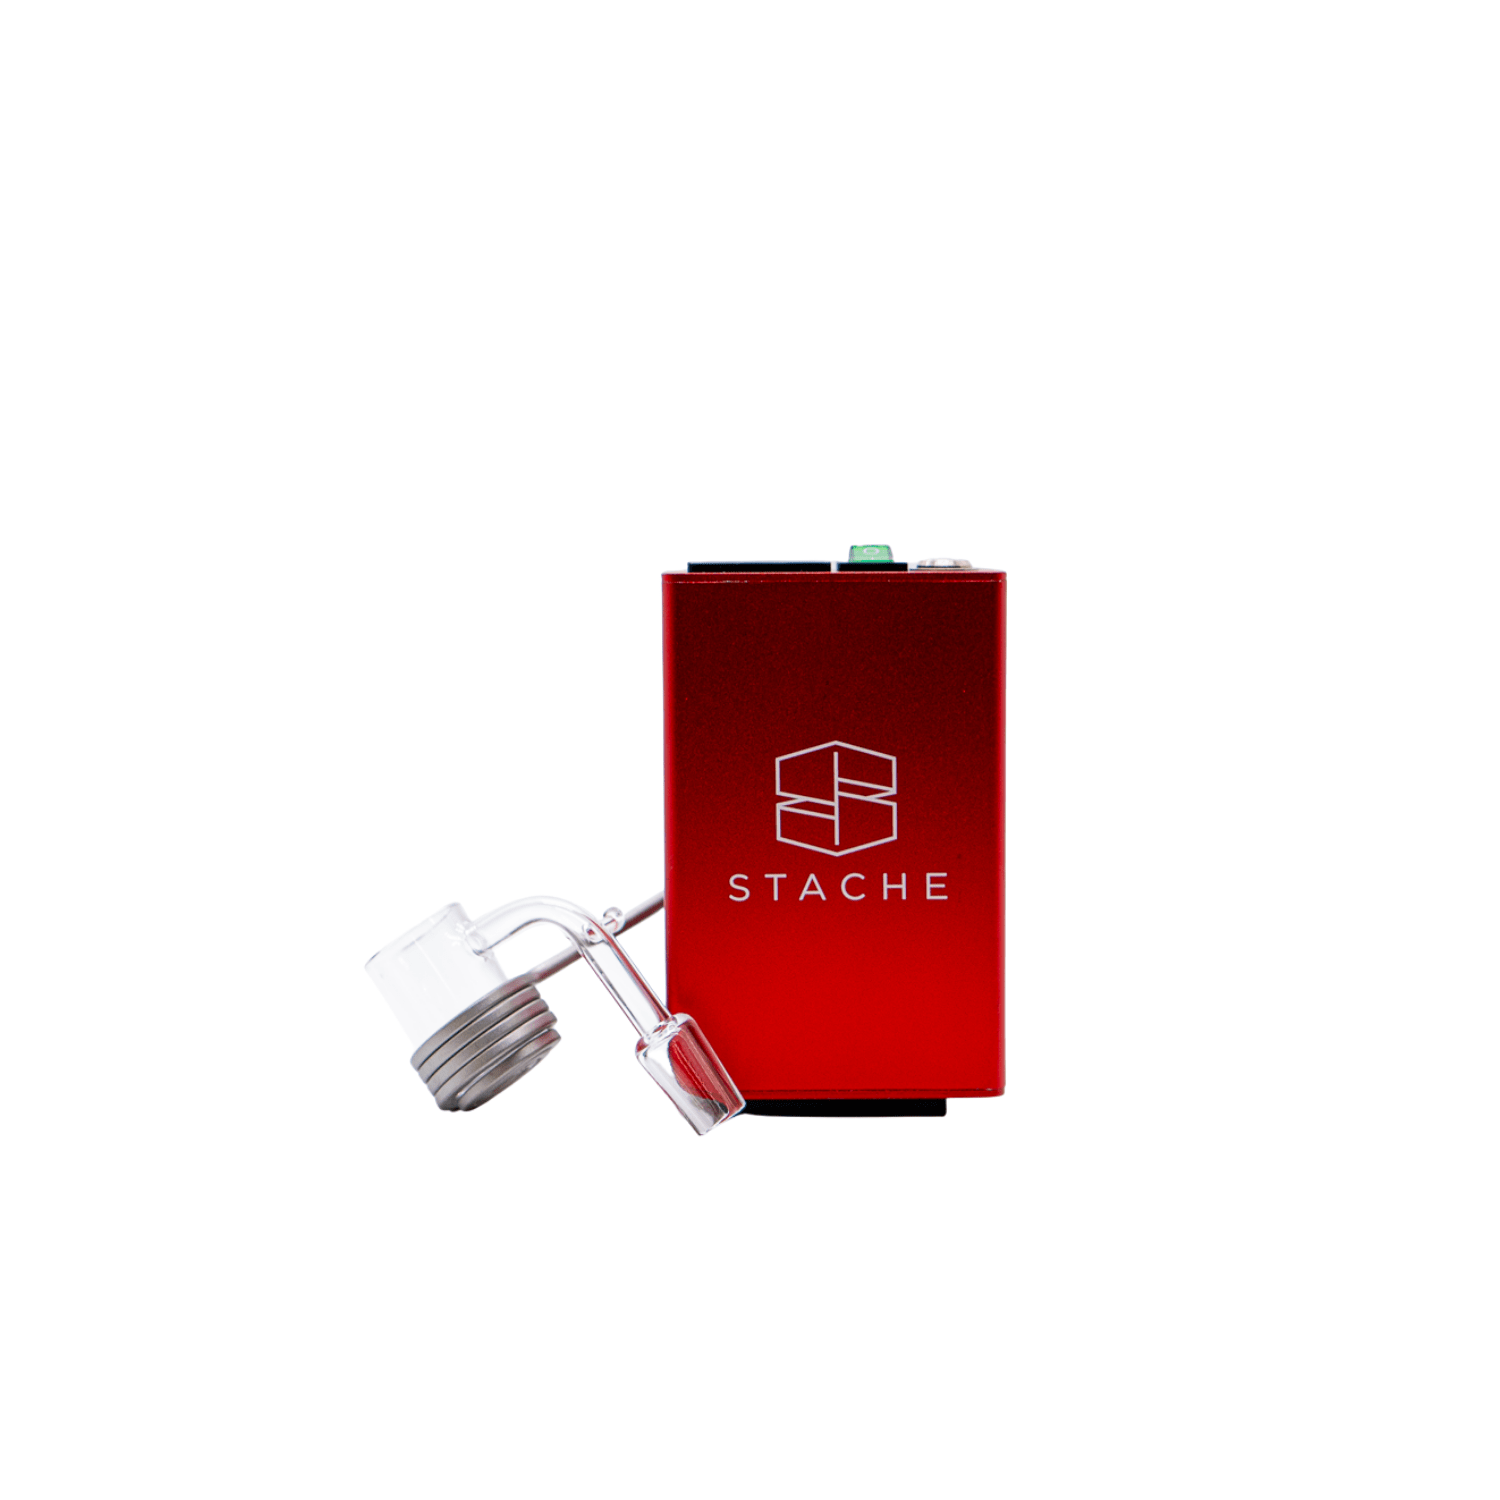 Red Stache E-Nail Kit with 14mm Quartz Banger